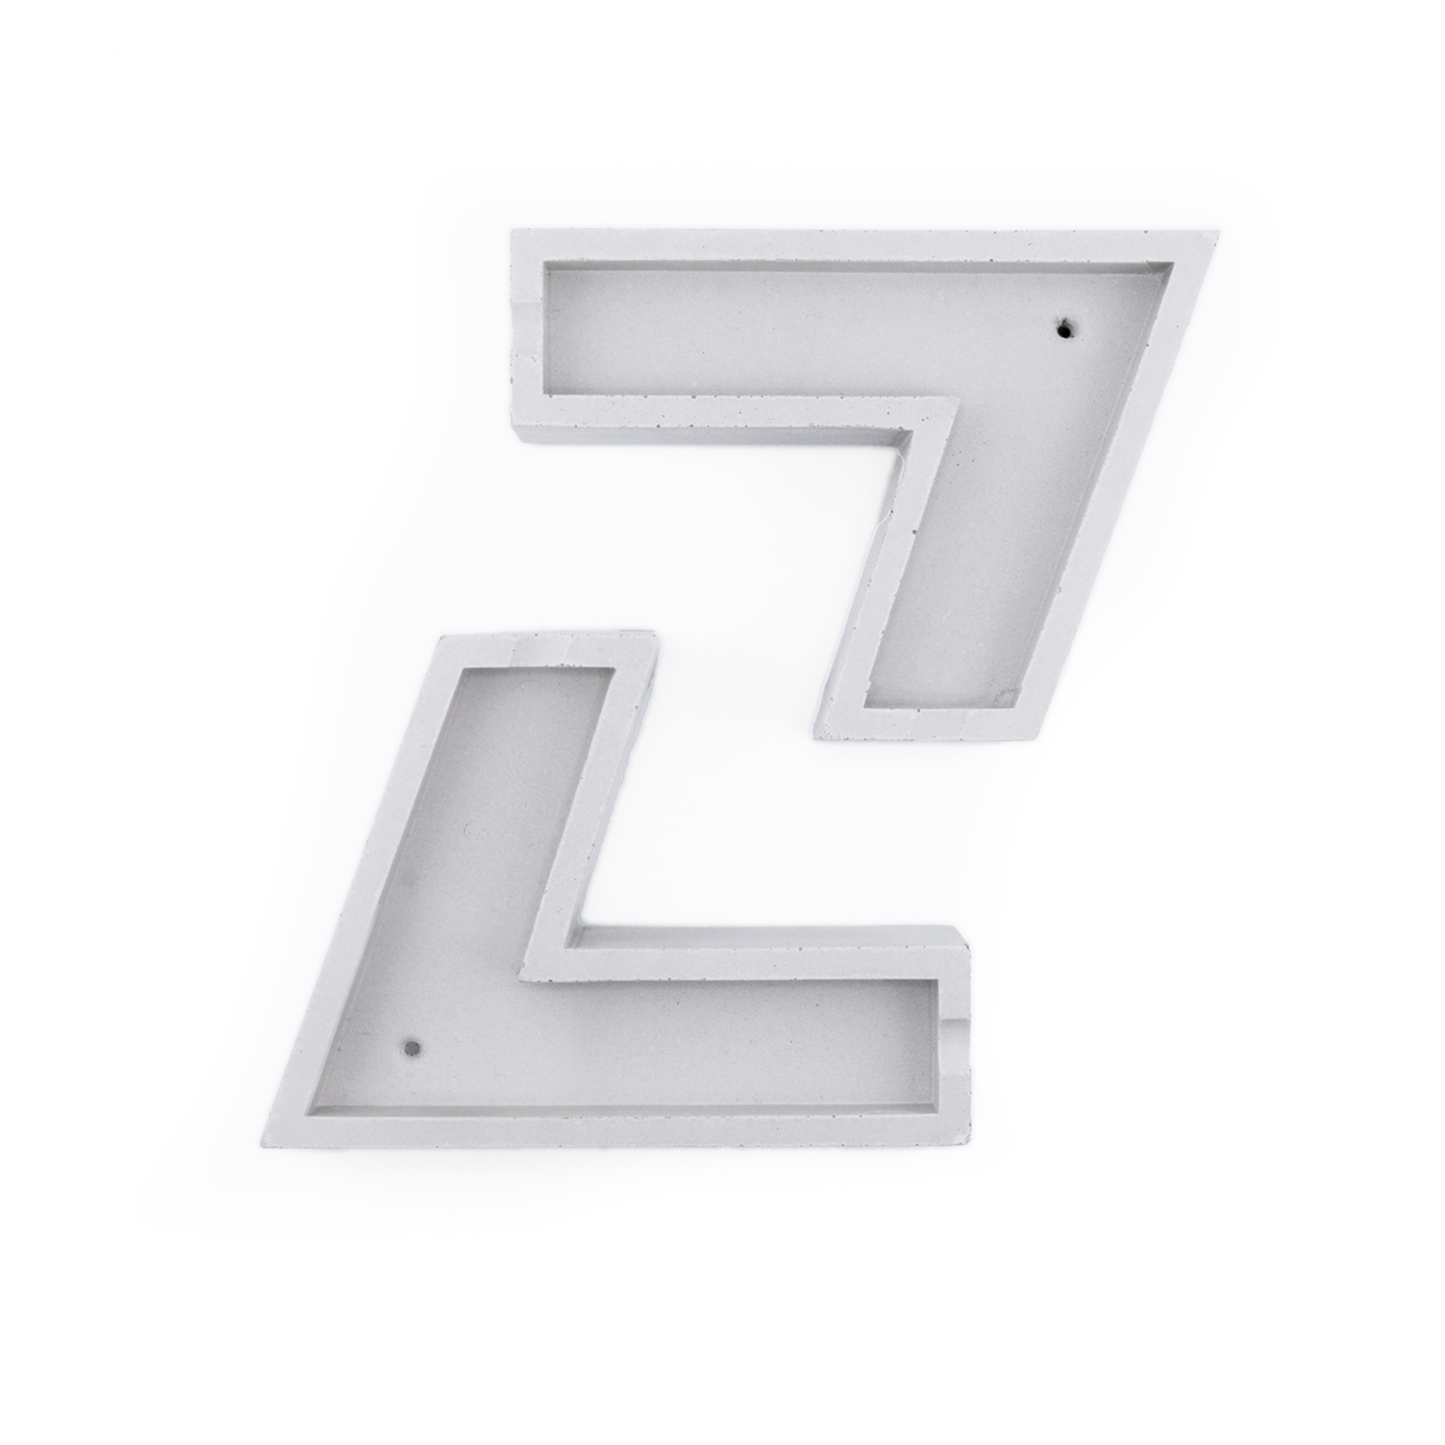 LAUZZA x Vented | "The Z" Ashtray